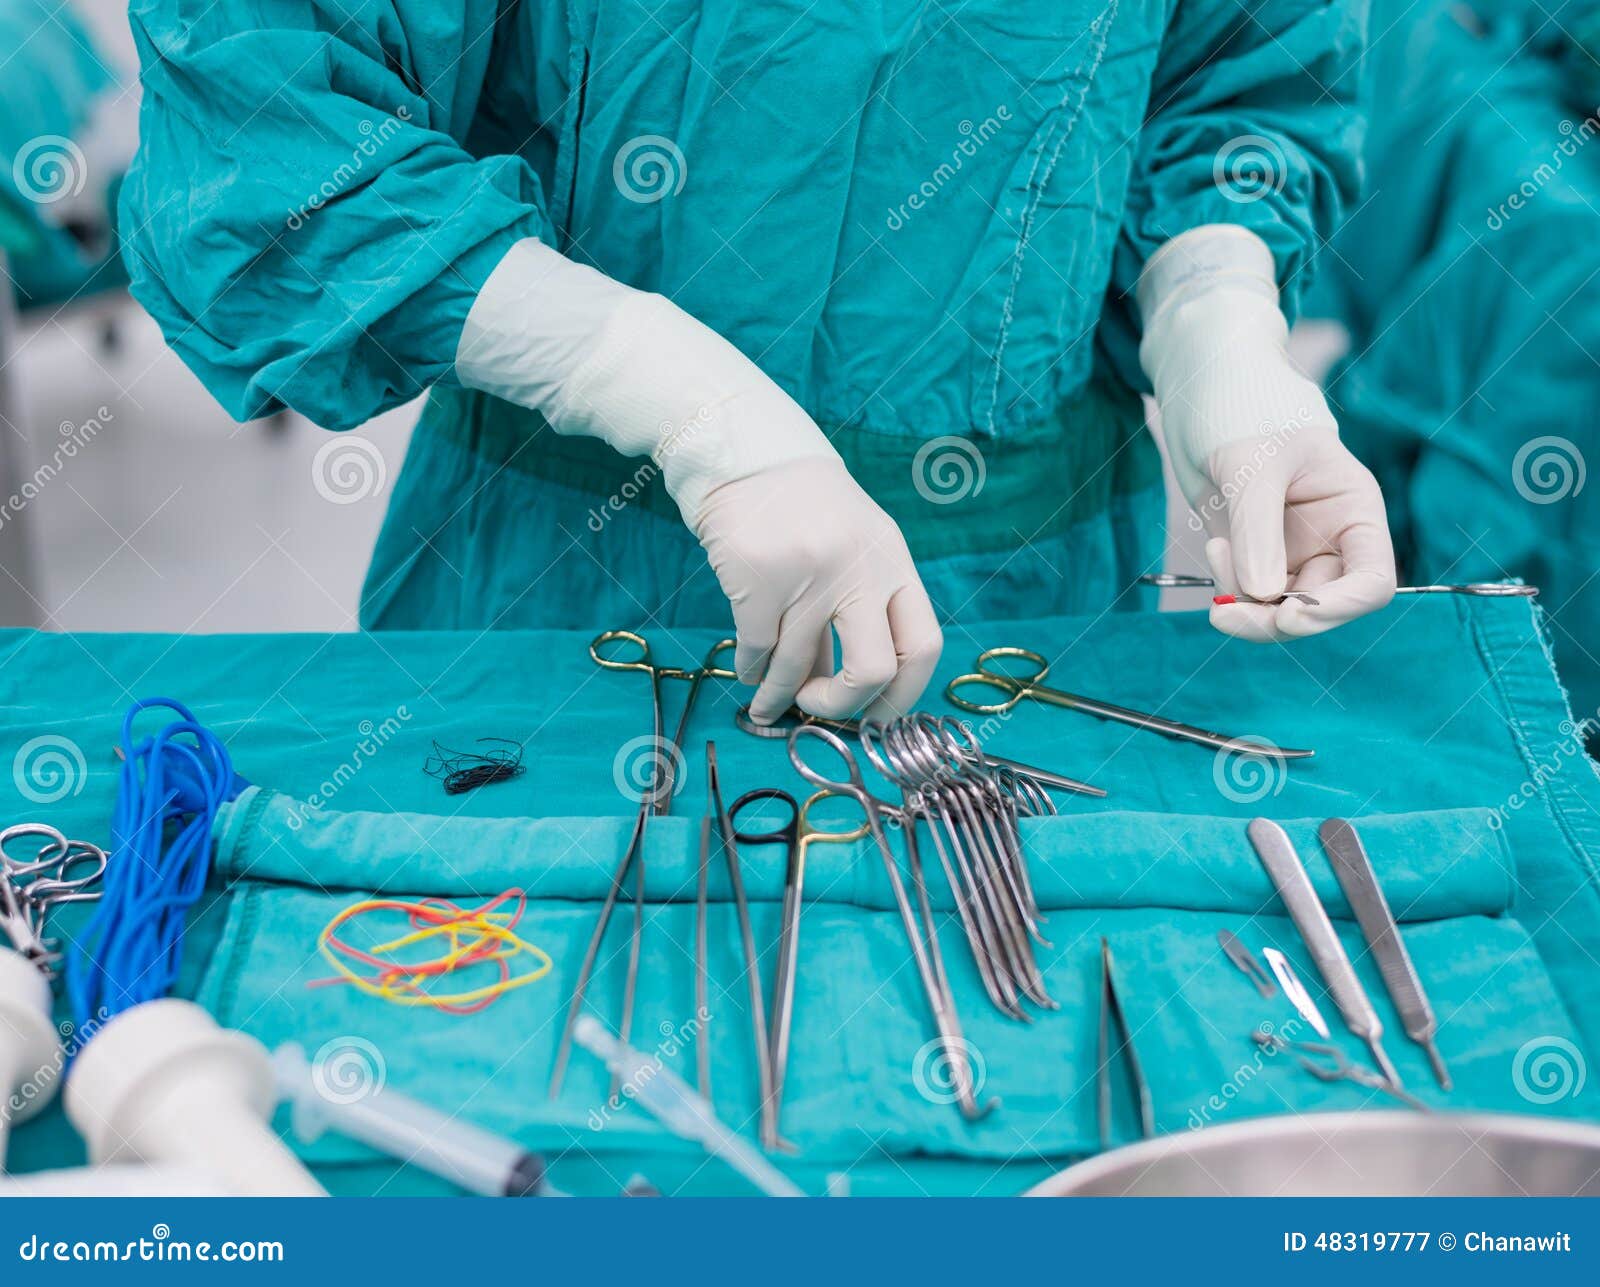 Подготовка к хирургической операции. Хирургические инструменты в операционной. Хирургические инструменты операционный стол. Медицинский инструмент в операционной.